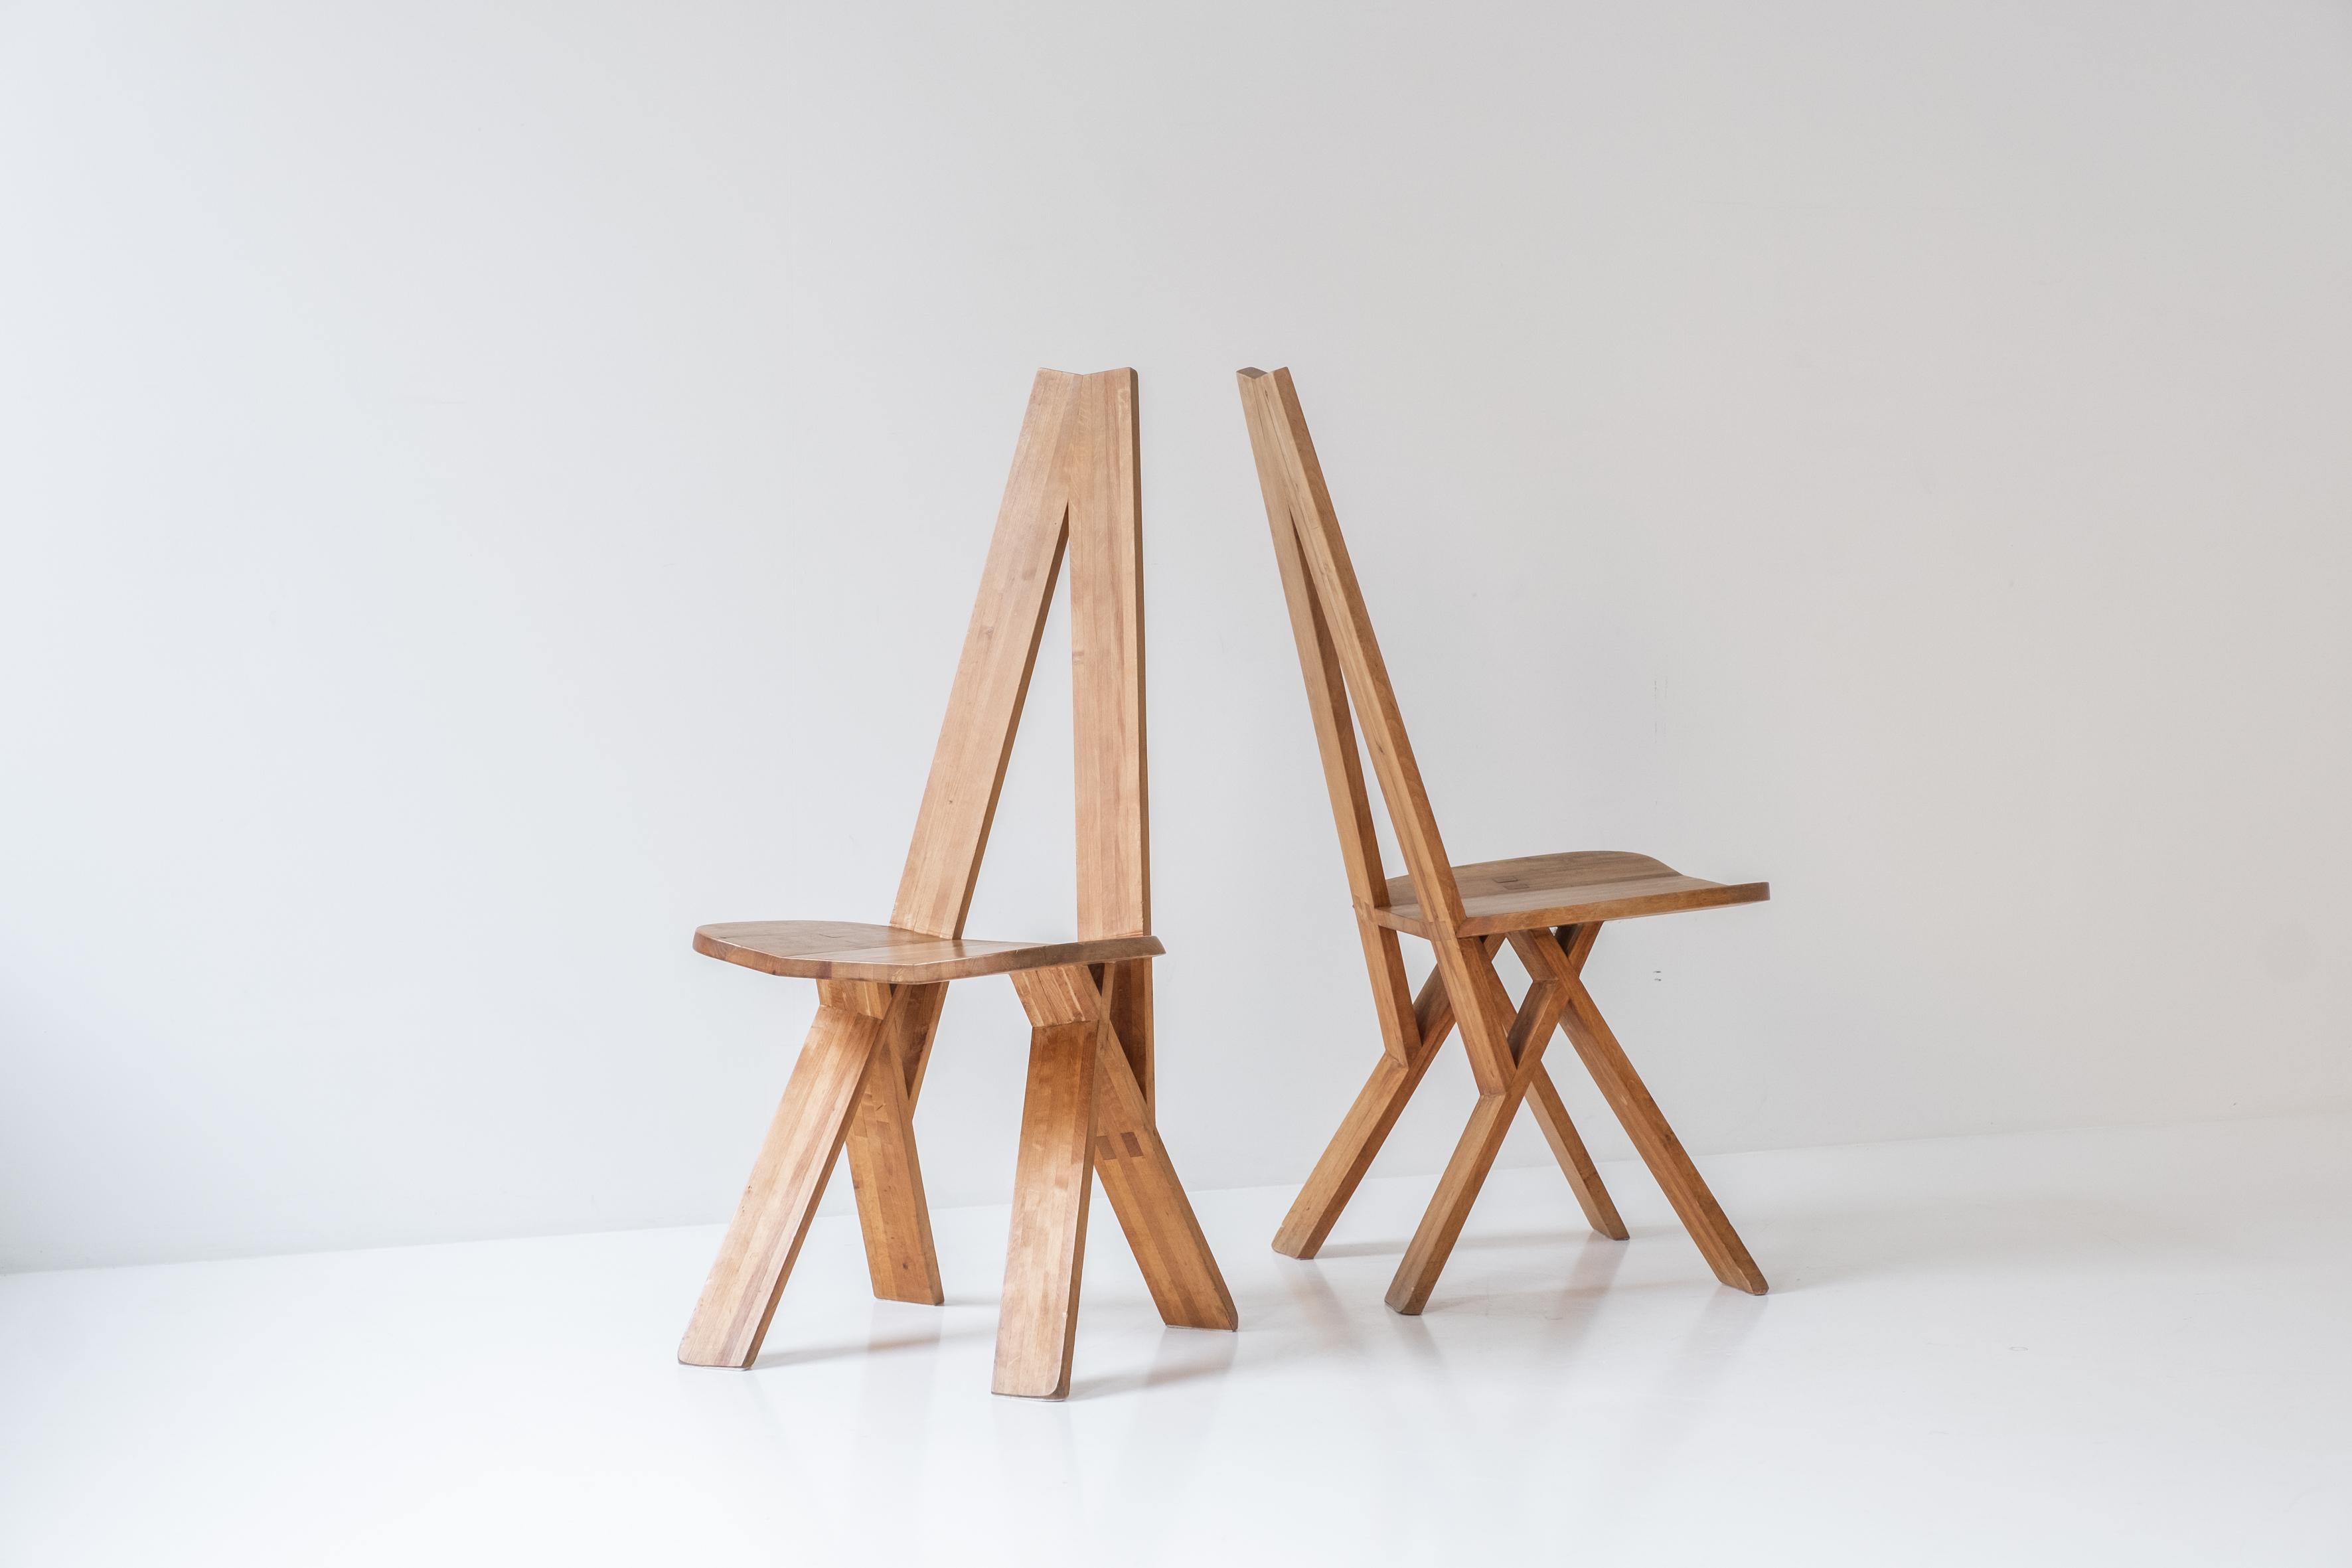 Superbe ensemble de quatre chaises de salle à manger 'S45' par Pierre Chapo, France 1979. Ces chaises sculpturales sont composées de nombreuses petites sections de bois assemblées et collées les unes aux autres. Cet ensemble est fabriqué en orme